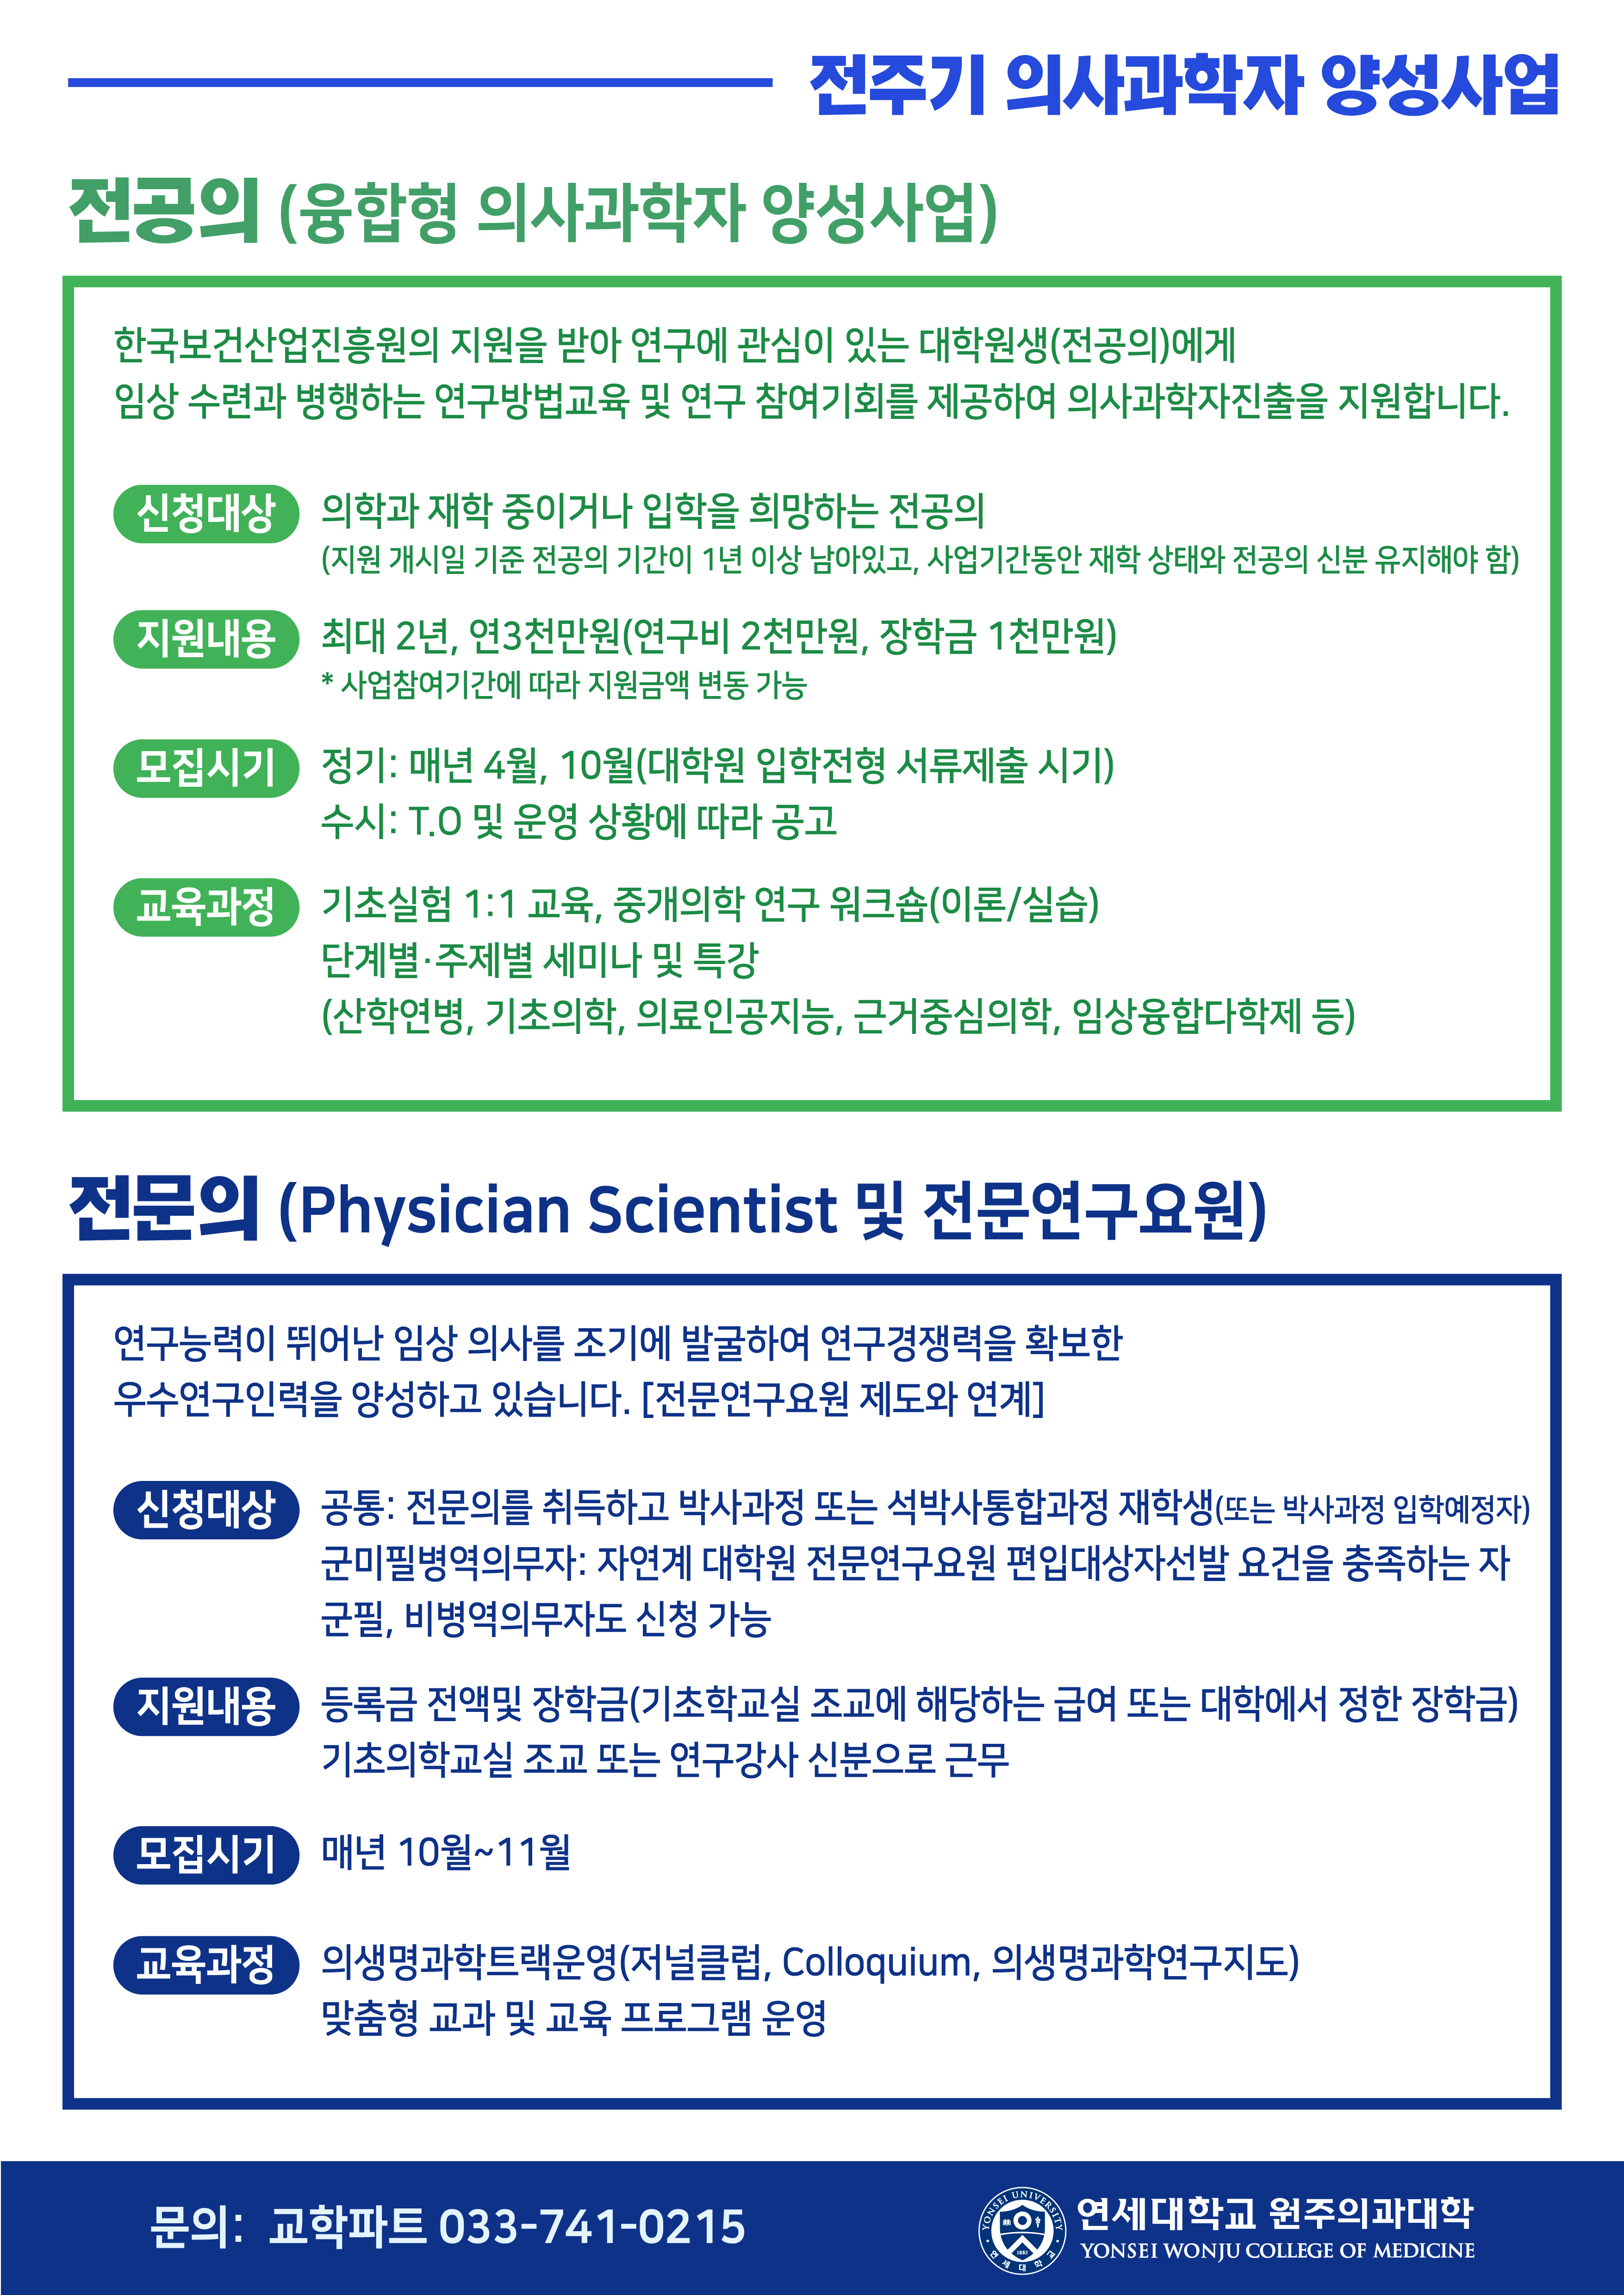 전주기 의사과학자 양성사업 포스터-2.jpg